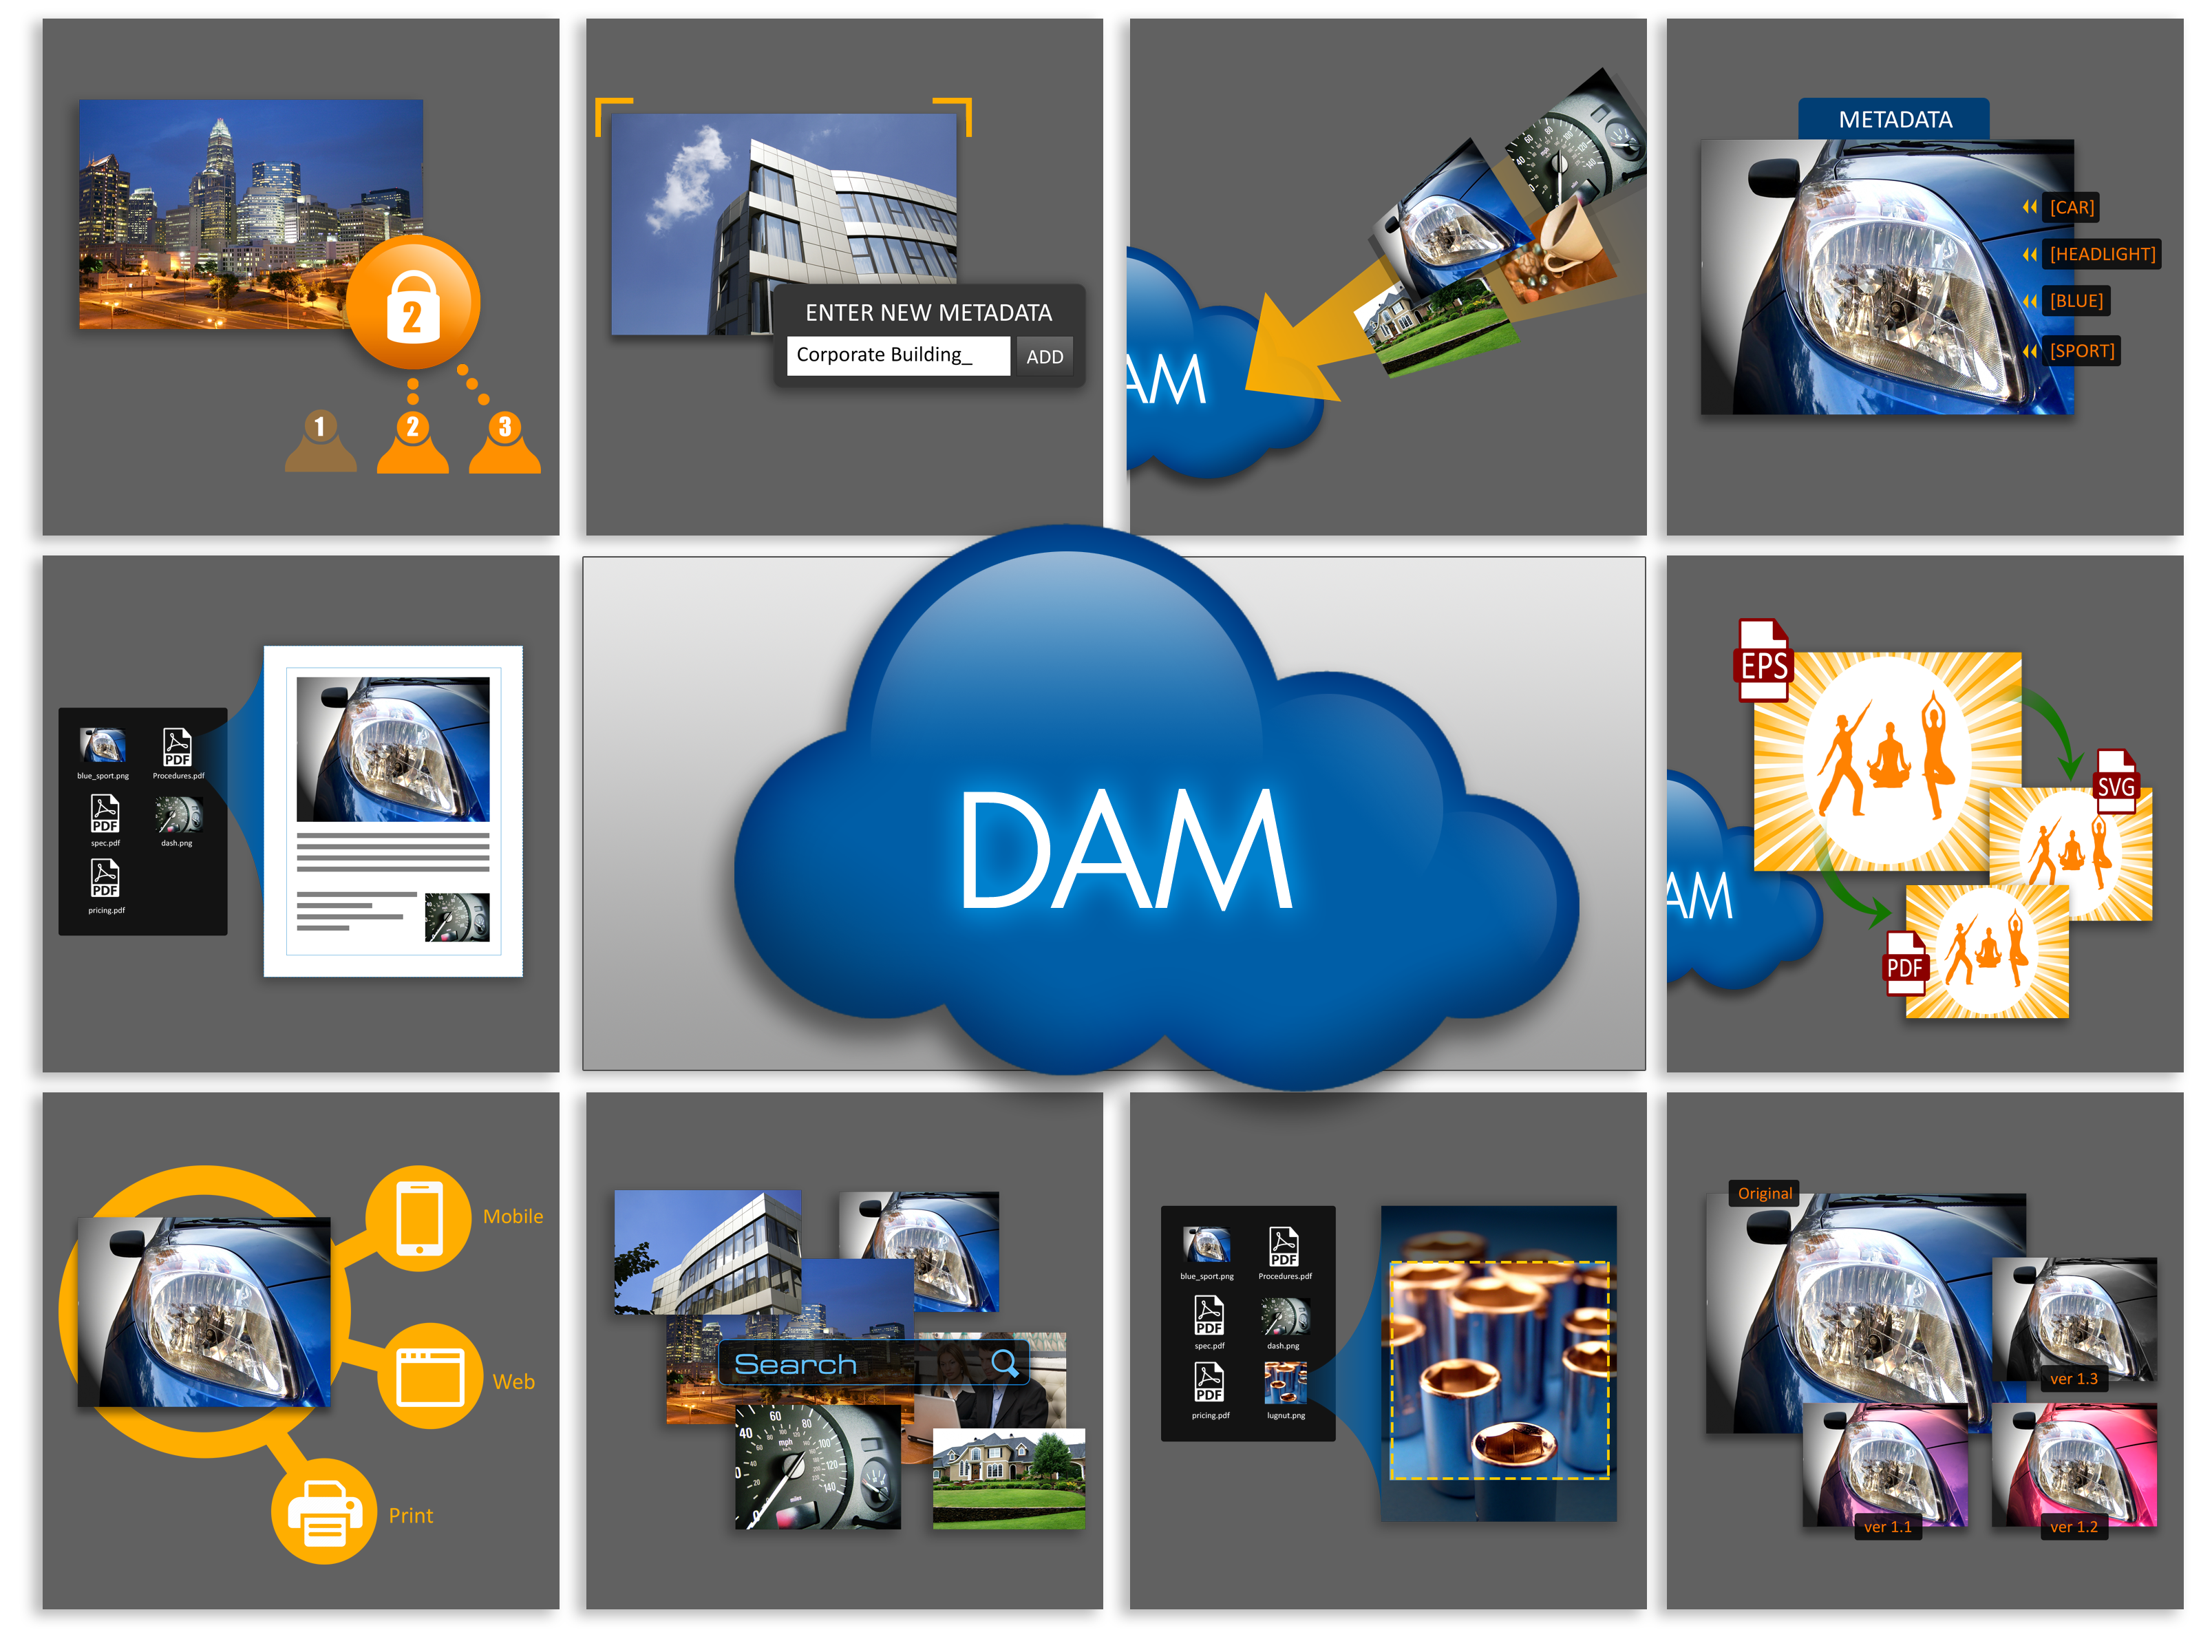 The Ten Functions of DAM